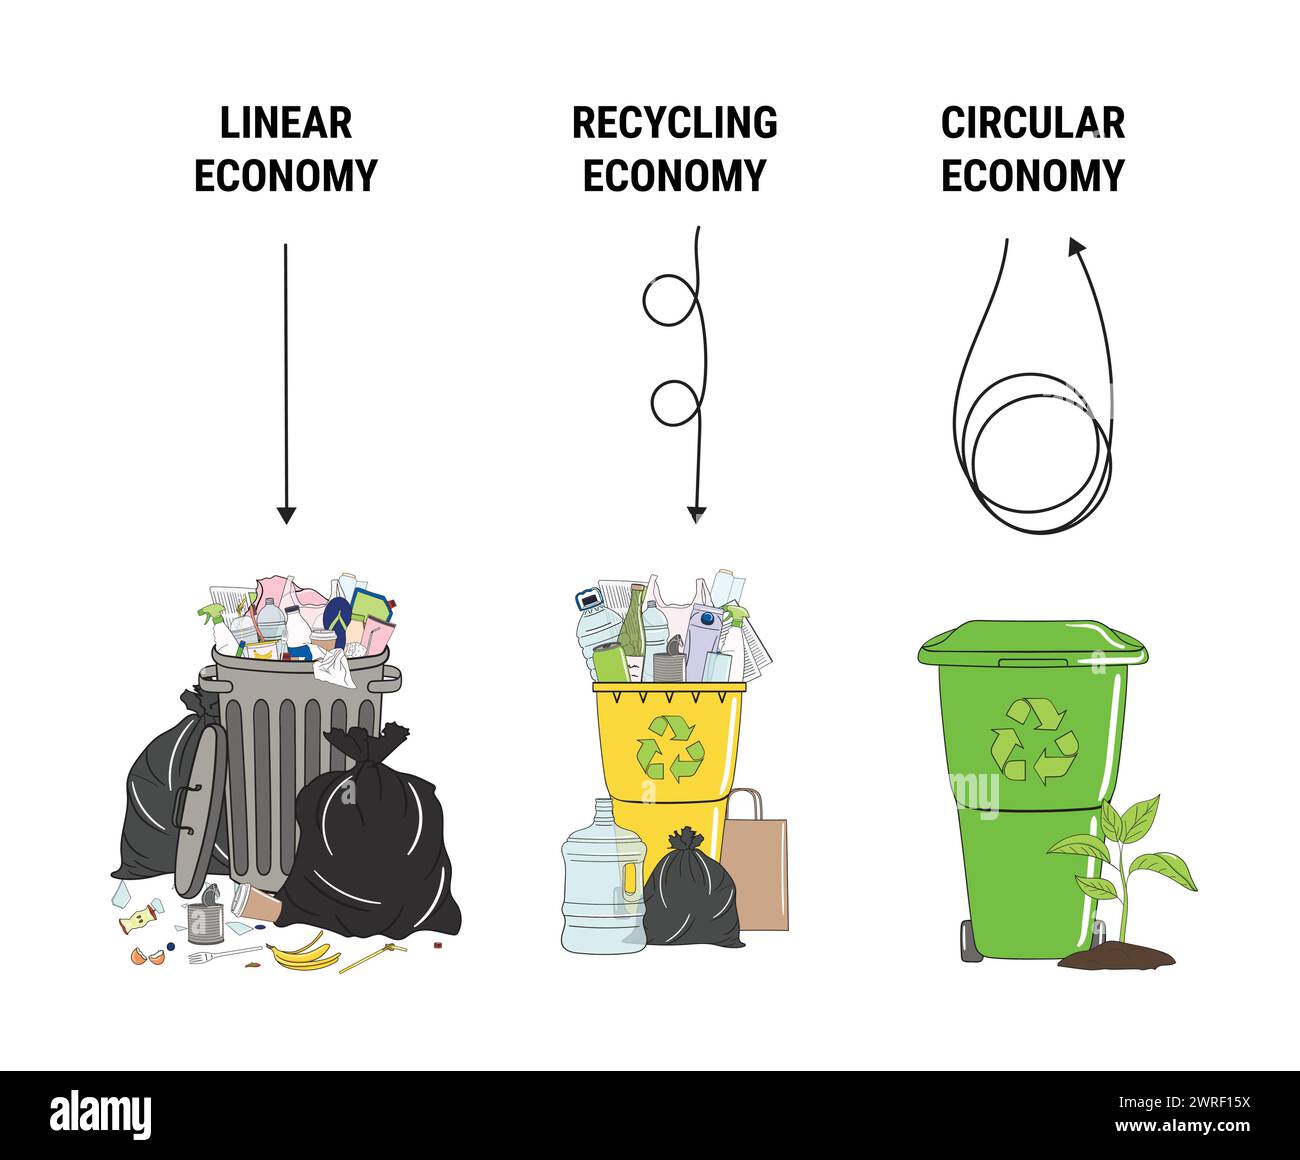 Infographie comparée de l’économie linéaire, du recyclage et de l’économie circulaire. Quantité de déchets. Schéma du cycle de vie du produit, de la matière première à la production, recyc Illustration de Vecteur